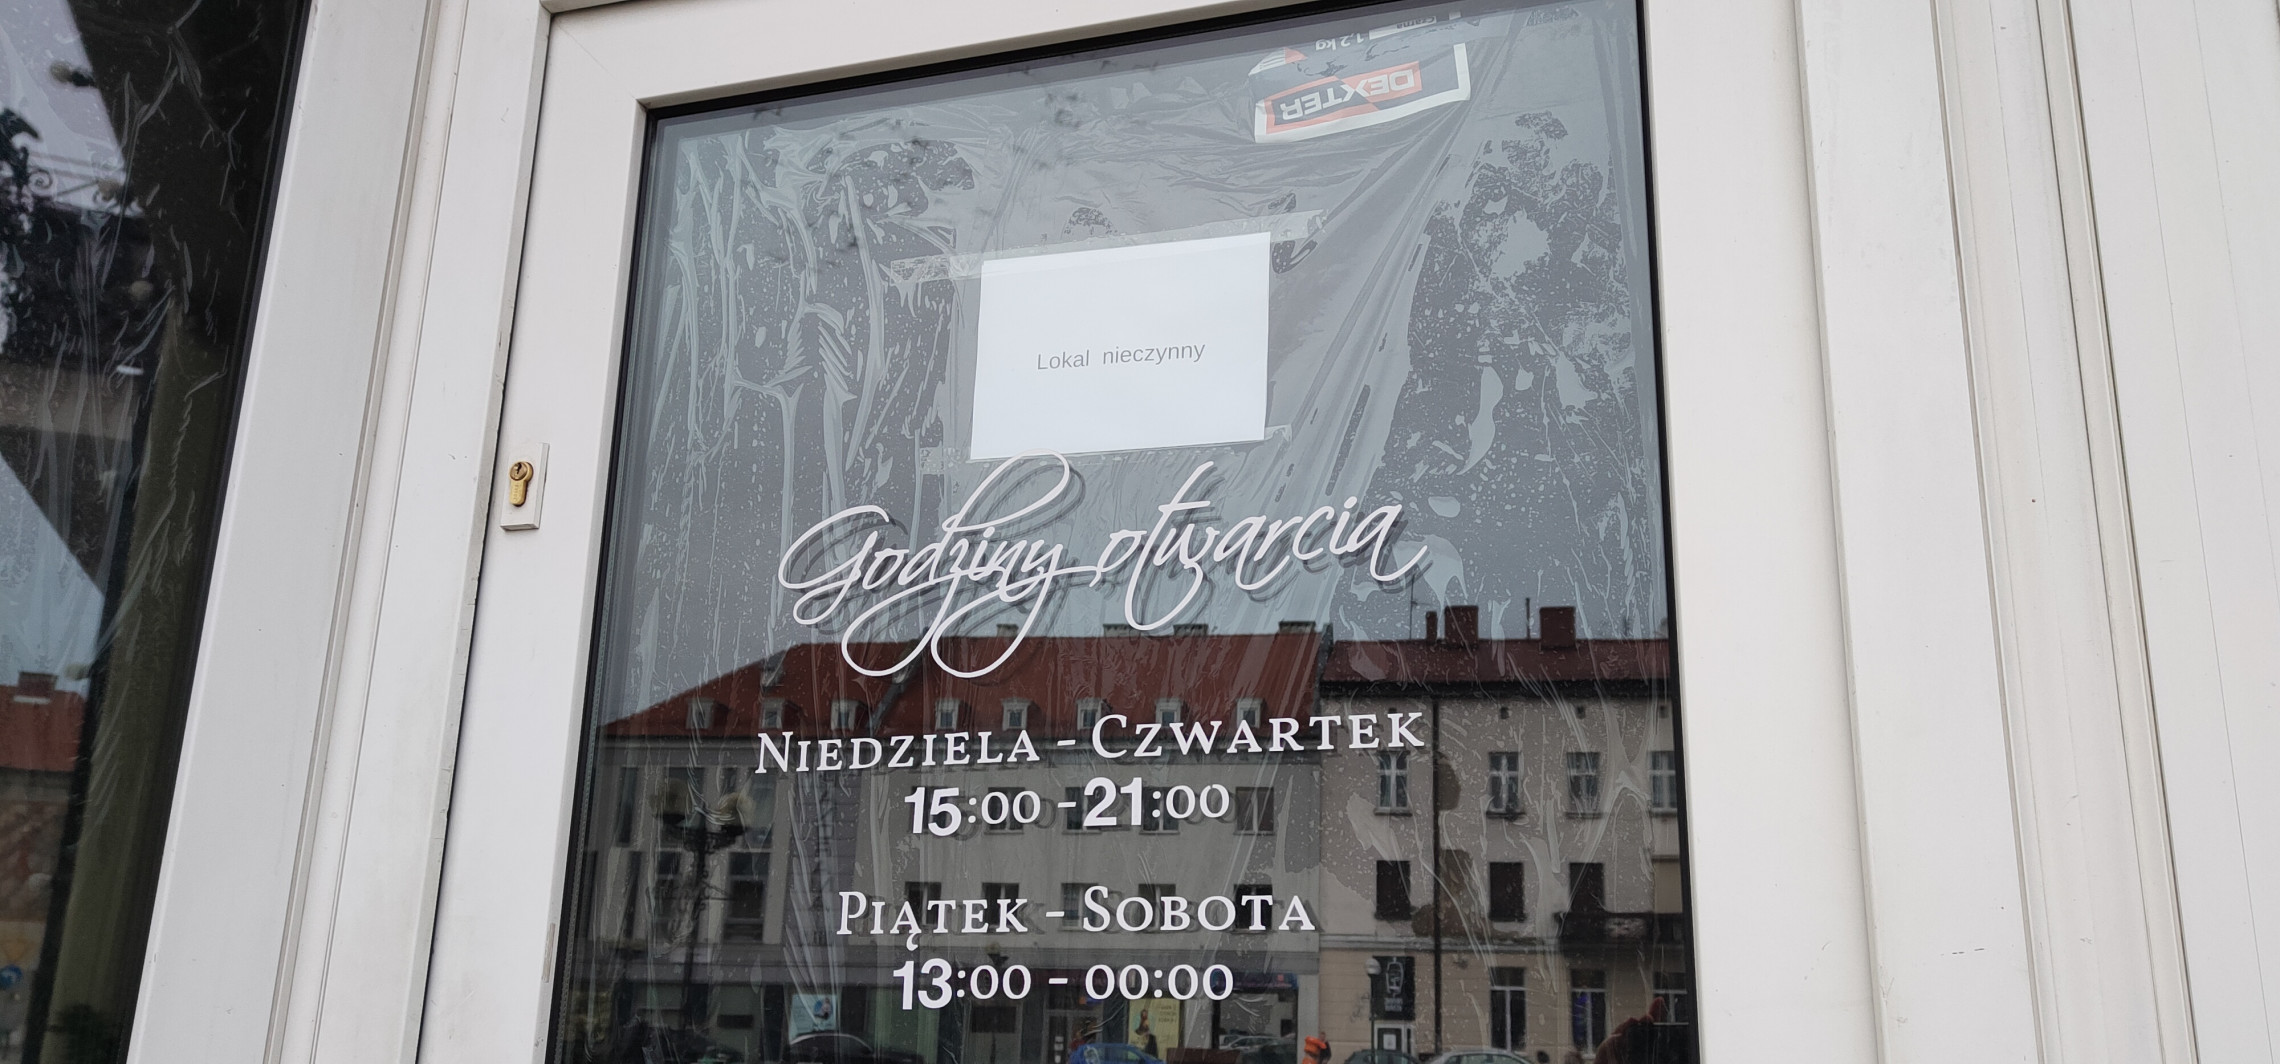 Inowrocław - To miejsce spotkań znika z mapy Inowrocławia. Przedsiębiorcy mówią otwarcie o problemach